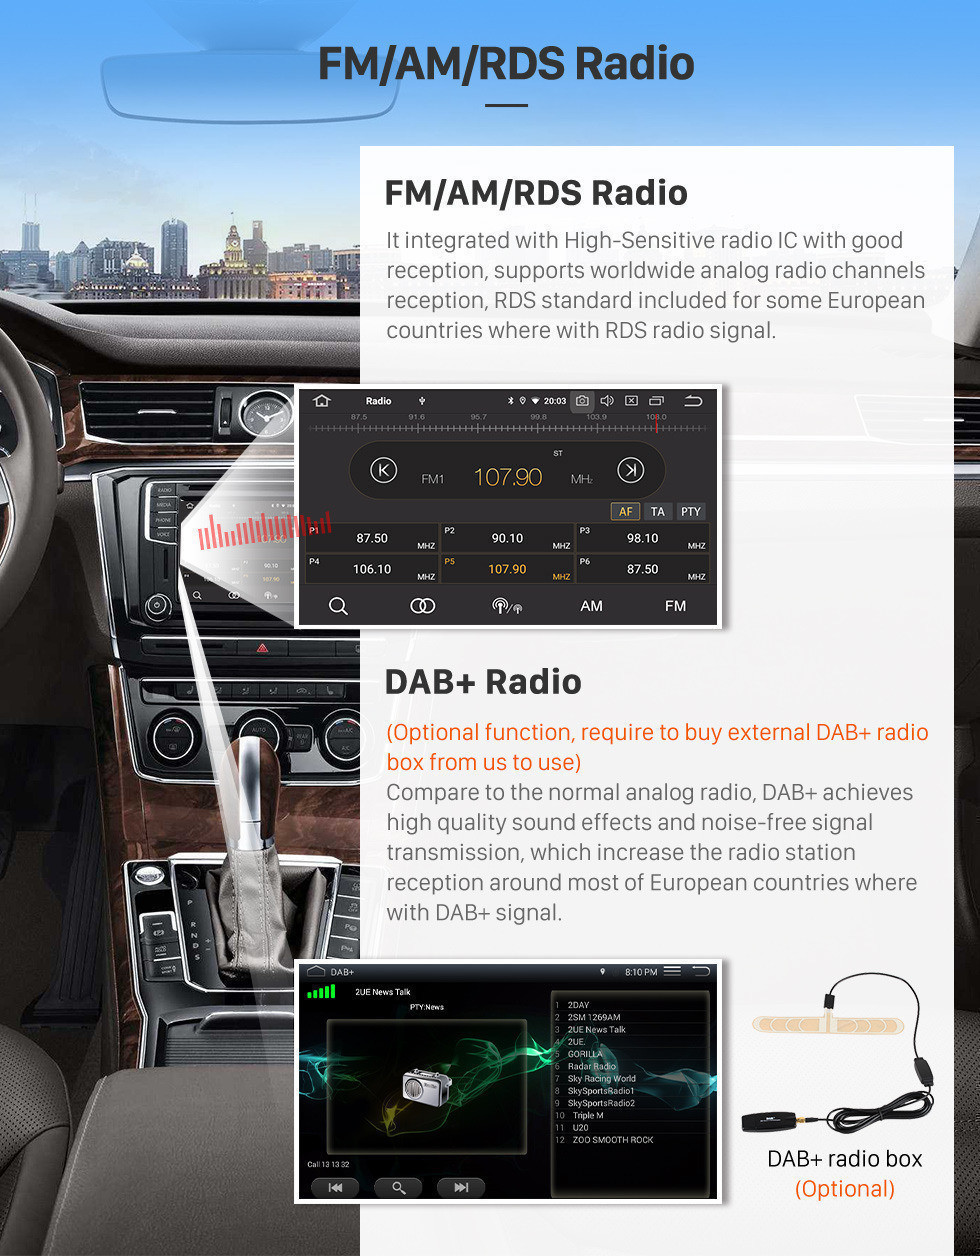 Seicane 9 дюймов 2010 2011 2012 2013 2014 Toyota old crown LHD Android 11.0 HD Сенсорный экран, авто стерео GPS Навигационная система Bluetooth FM / AM-радио Поддержка 3G / 4G WIFI Управление рулевого колеса DVR OBD II